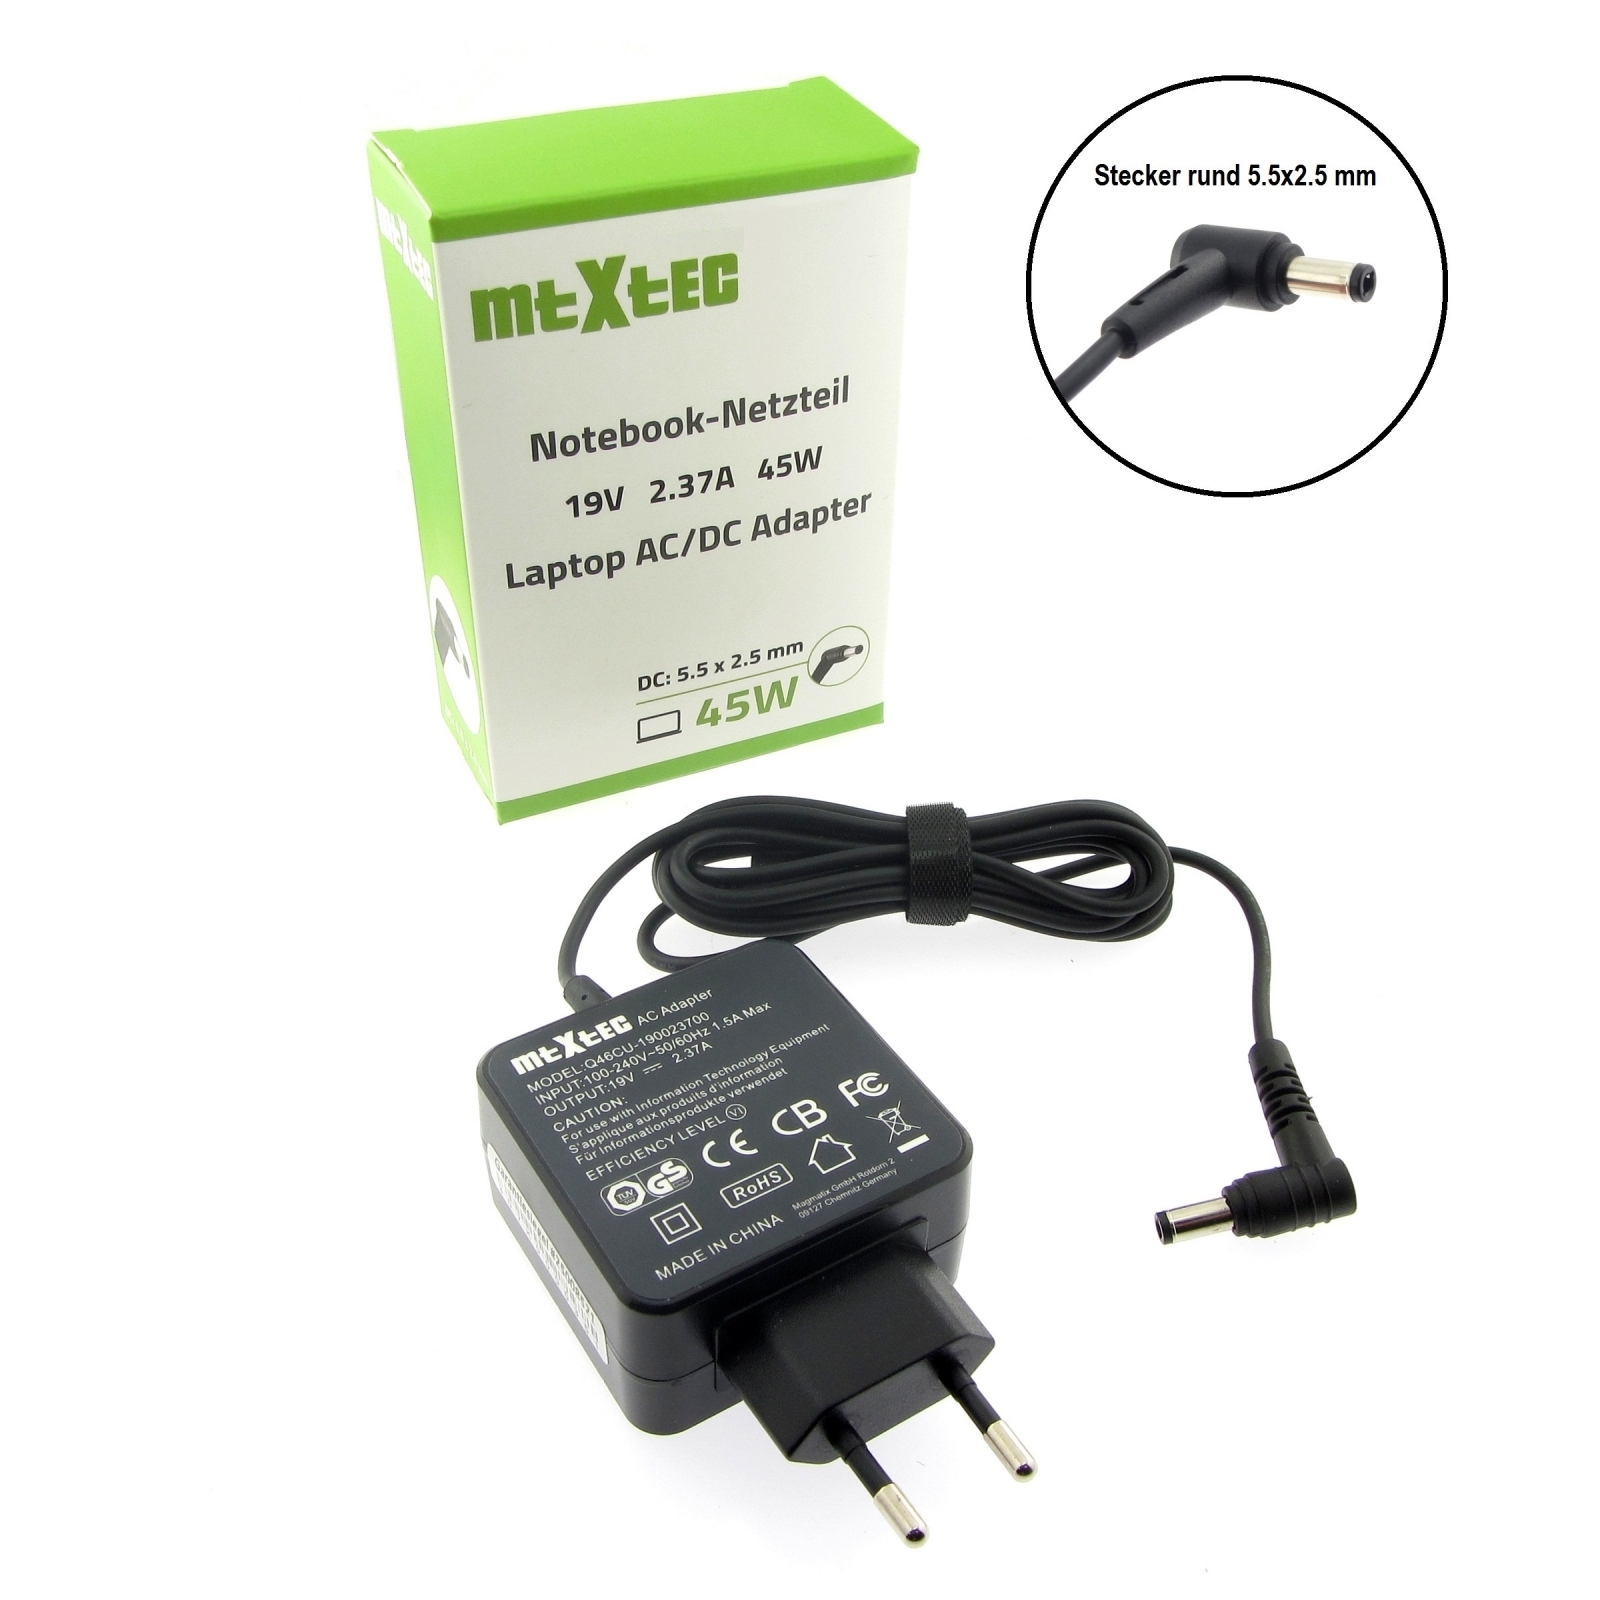 MTXTEC Netzteil, 19V, 2.37A Watt rund F551, 5.5 mm für 2.5 Stecker ASUS x Notebook-Netzteil 45